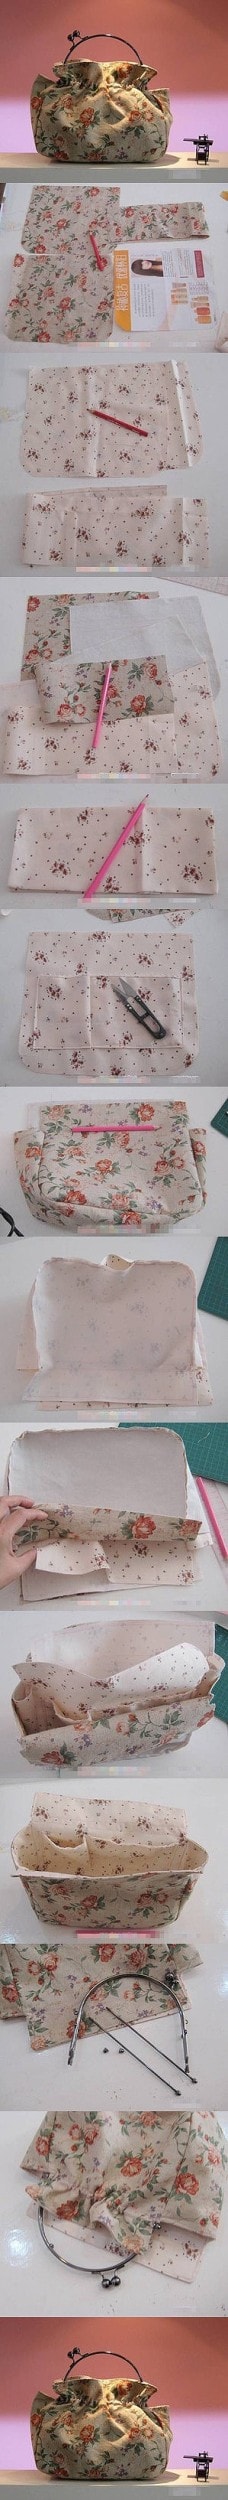 Easy And Crafty DIY Handbags Ideas